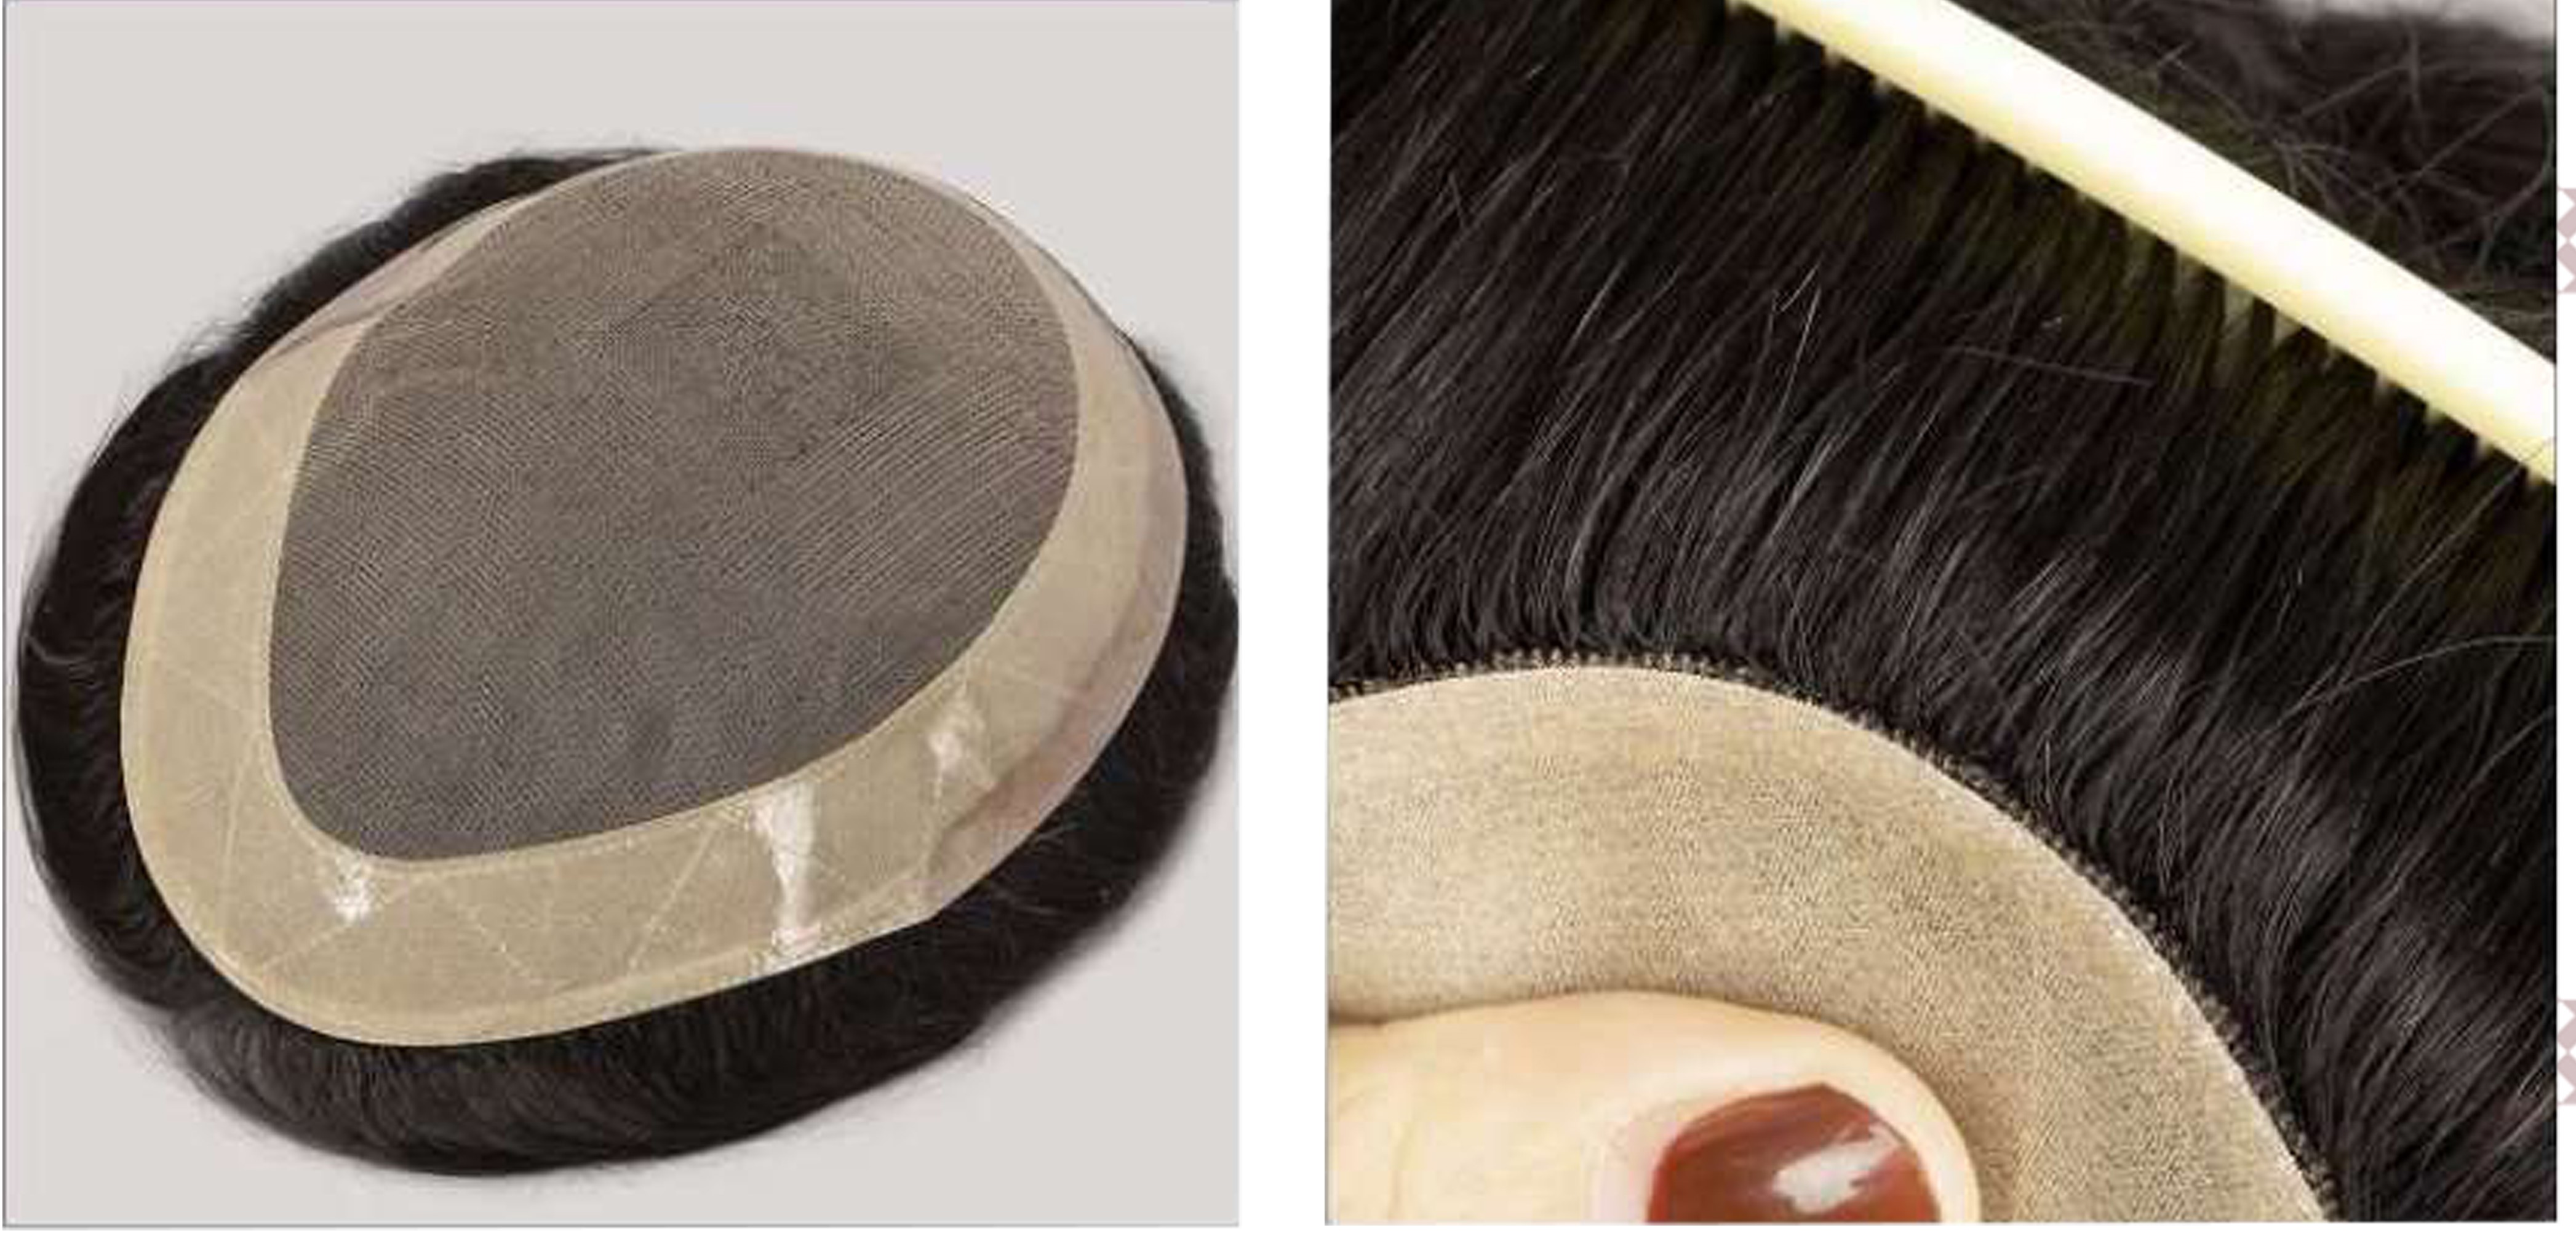 کلاه گیس مو طبیعی مردانه پروتز کف سر مدل لس آنجلسی (کد 8056)